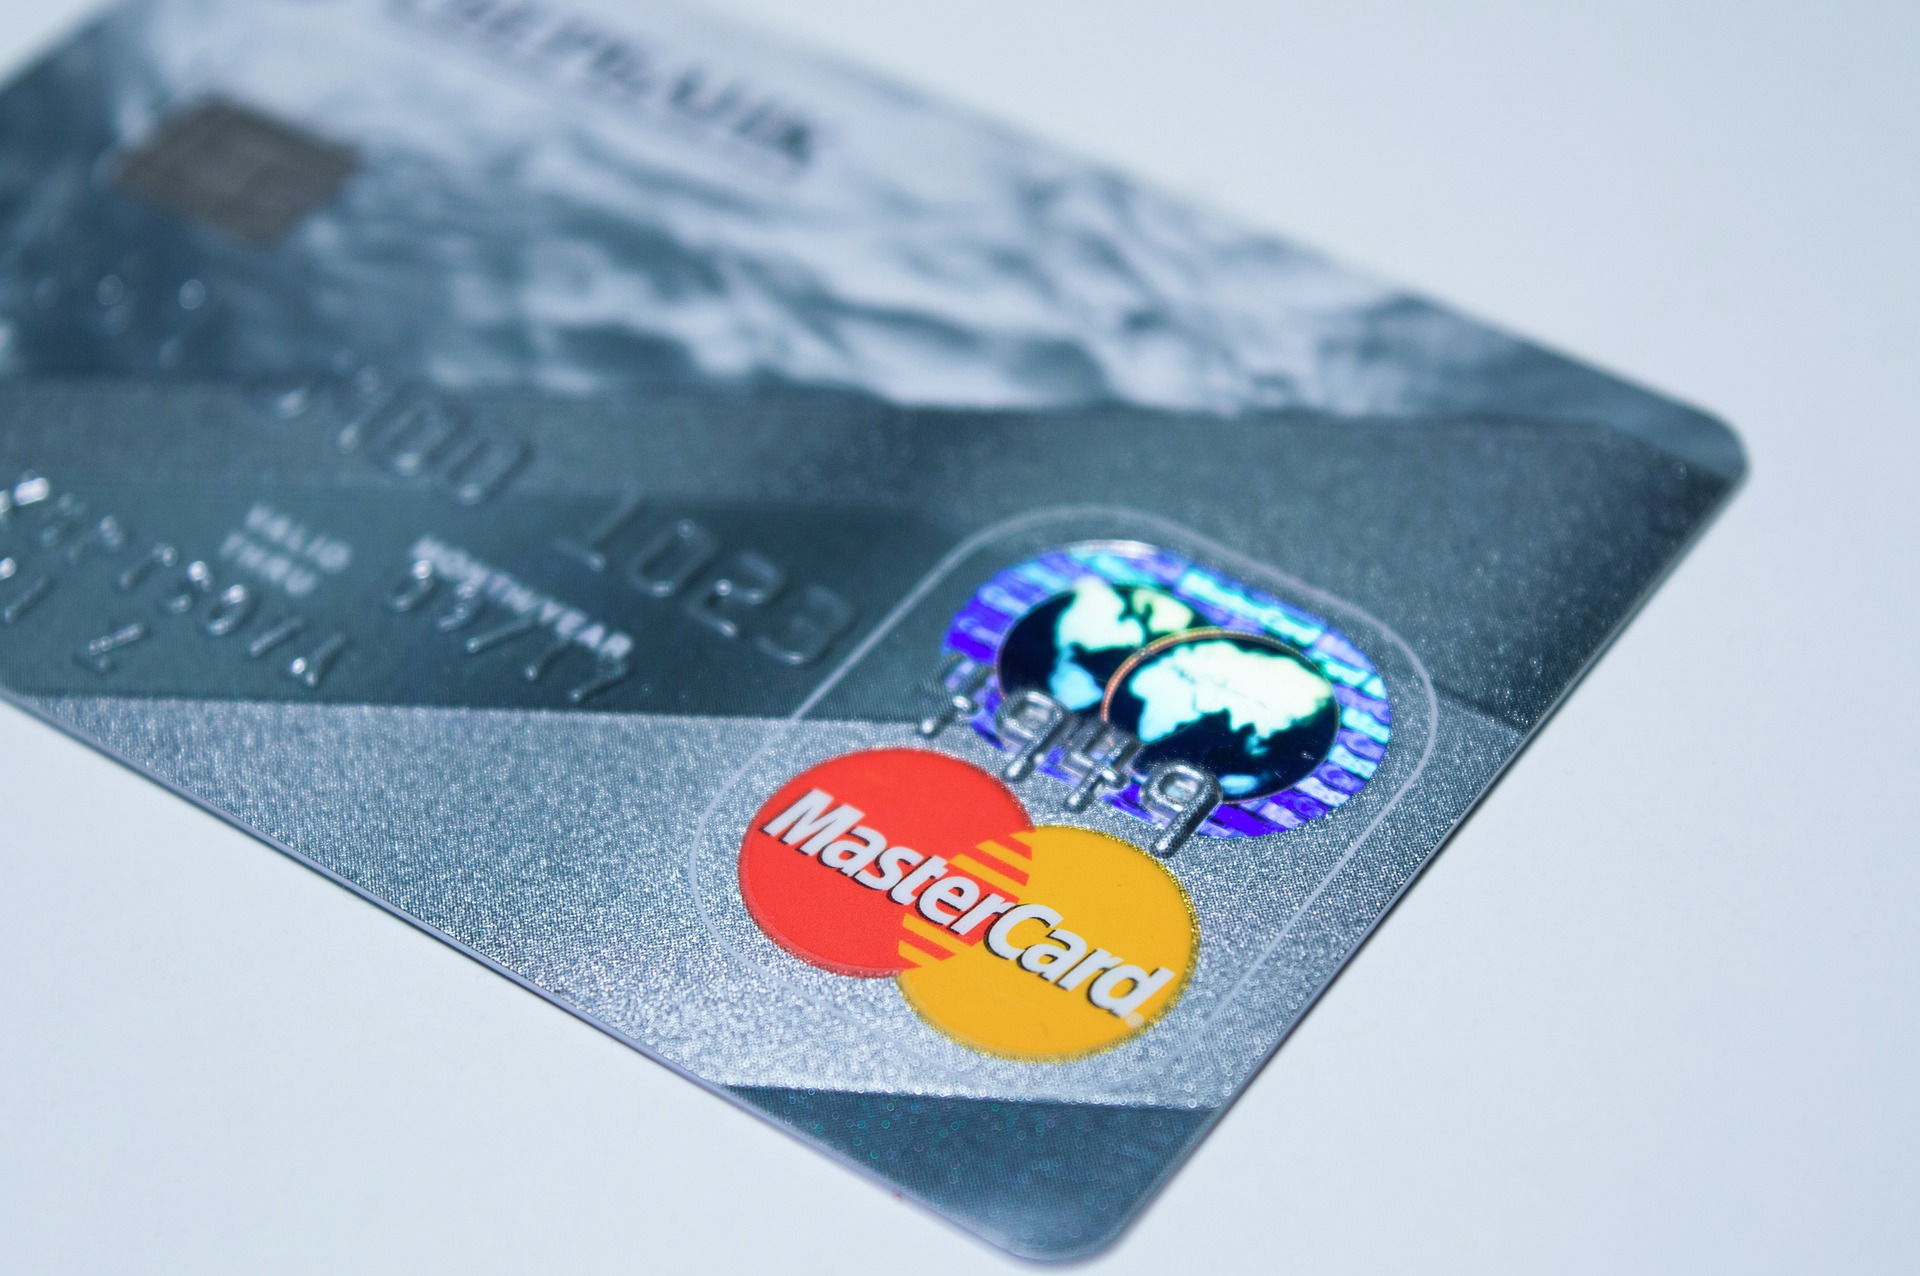 Mastercard unterbindet das automatische Belasten von Kreditkarten nach Gratis-Trials - Bild 1